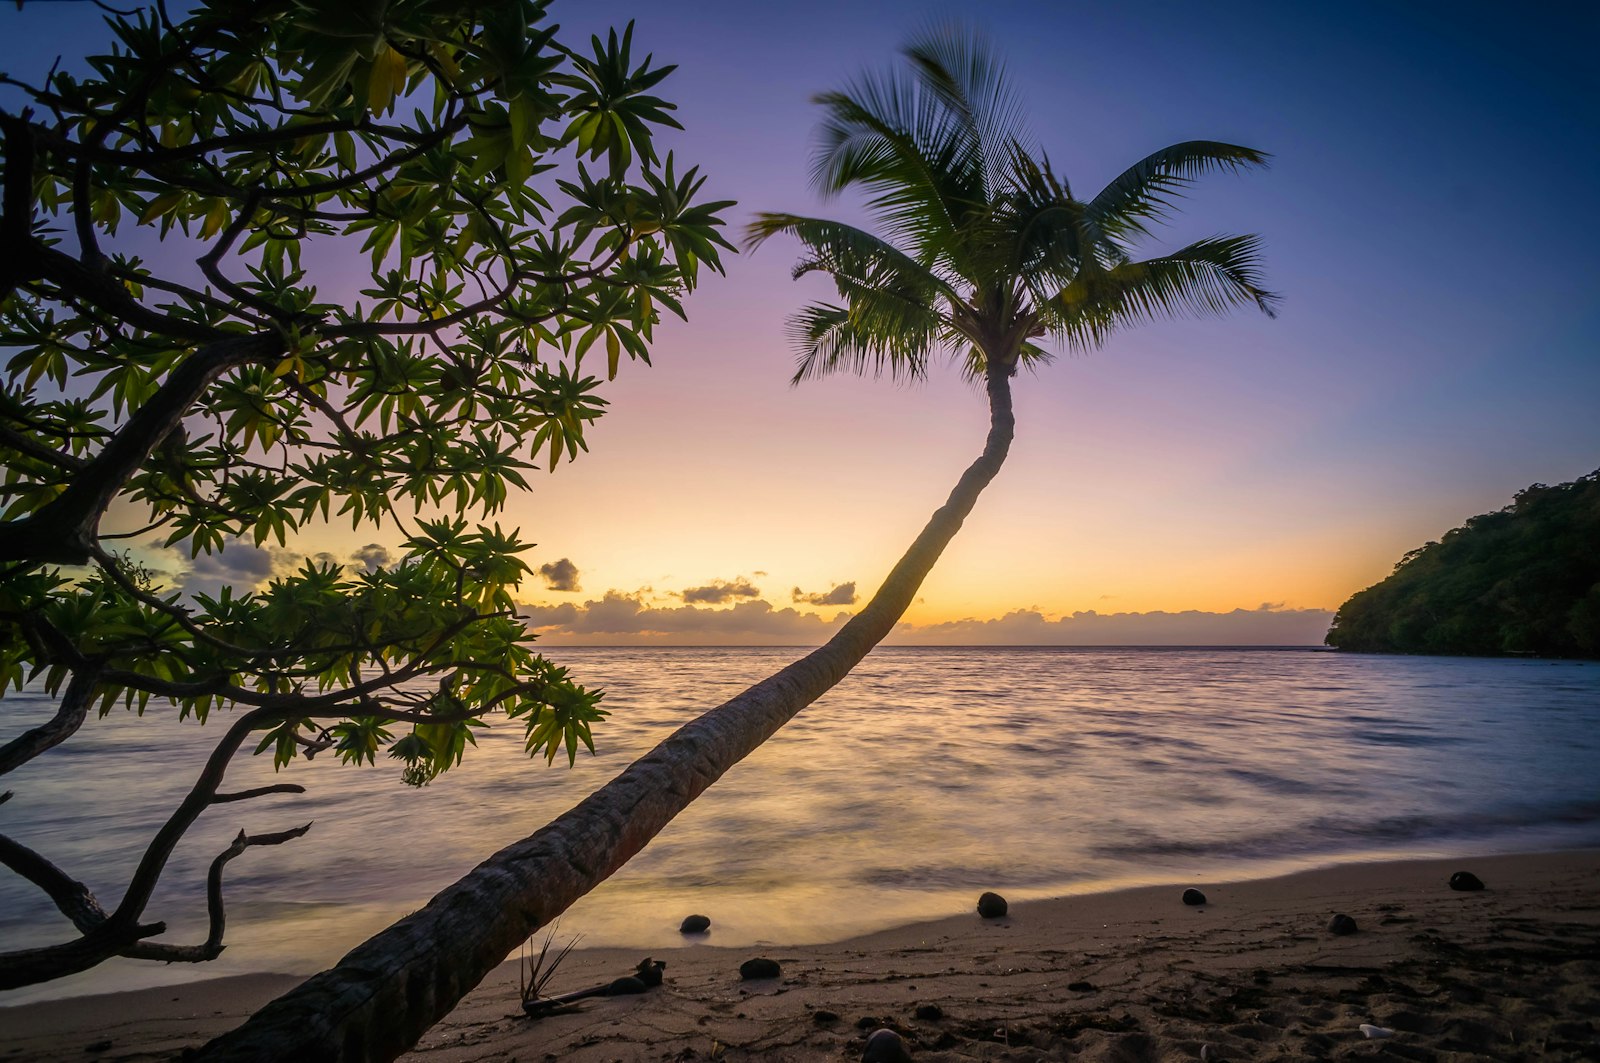 Sony E 16mm F2.8 sample photo. Photo of coconut tree photography